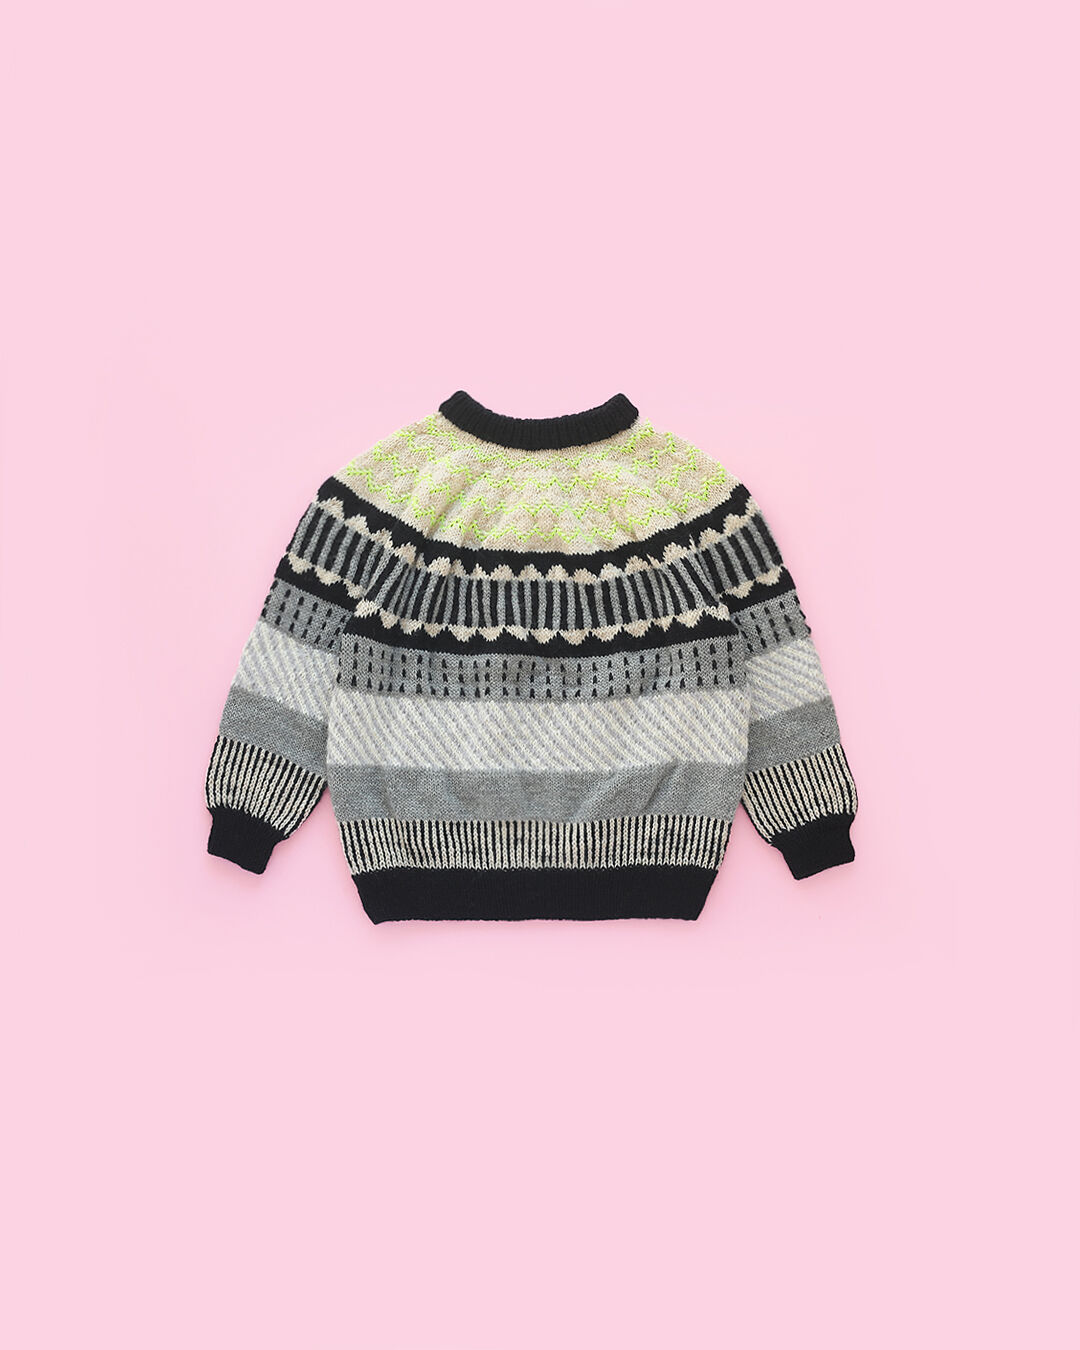 サニーなセーターのキット | chocoshoe online store